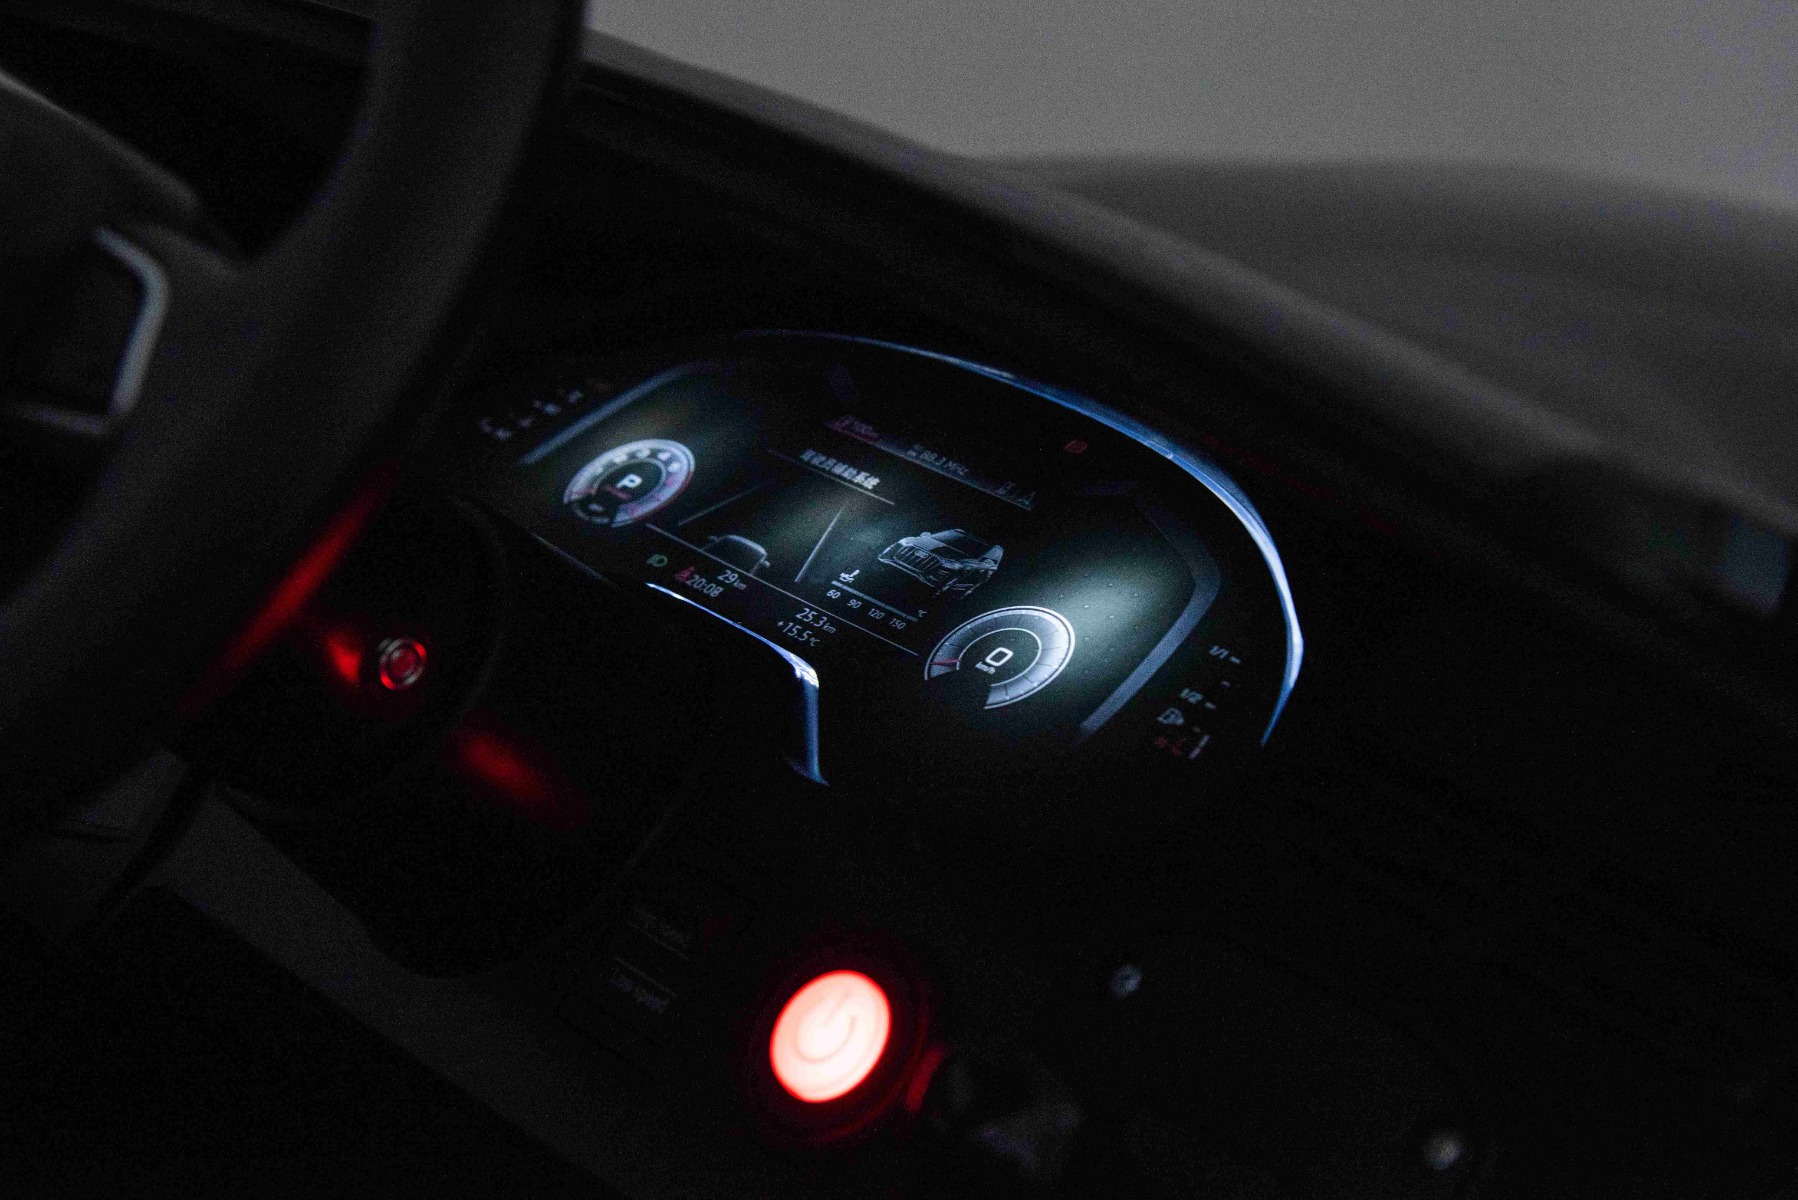 Illuminated dashboard and start button